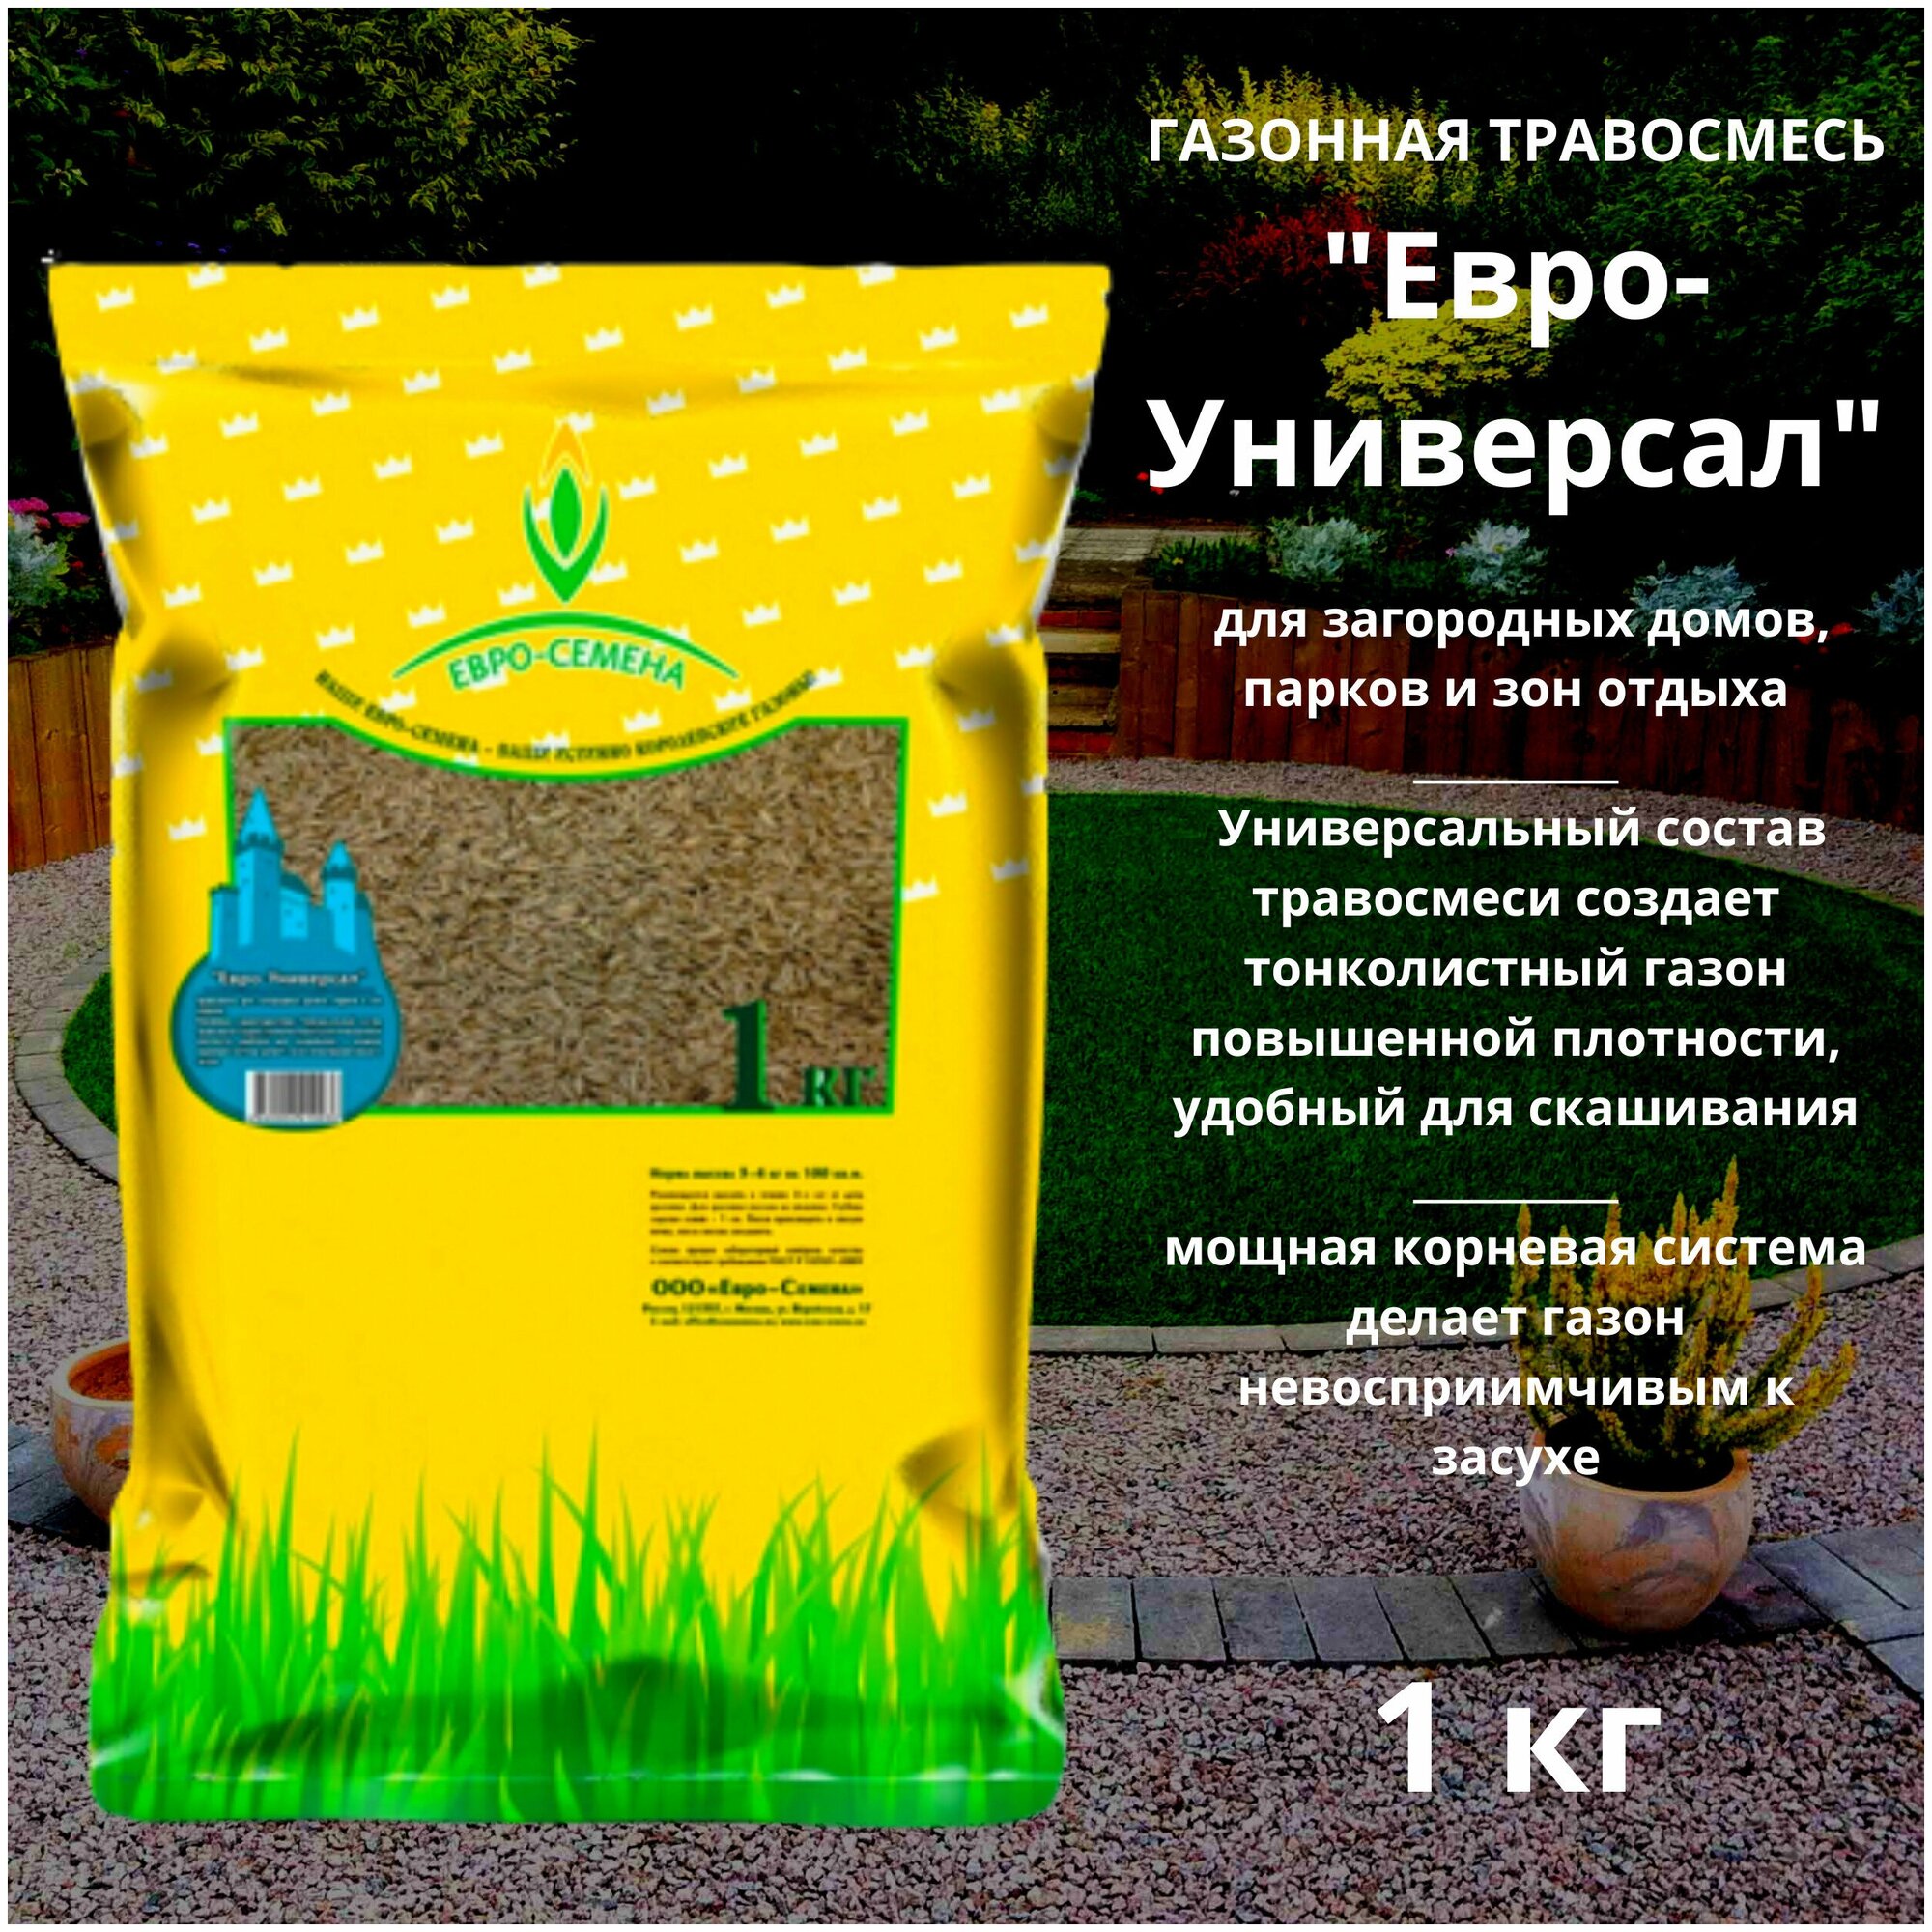 Газонная травосмесь (семена) Евро-Универсал 1 кг для загородных домов, парков и зон отдыха